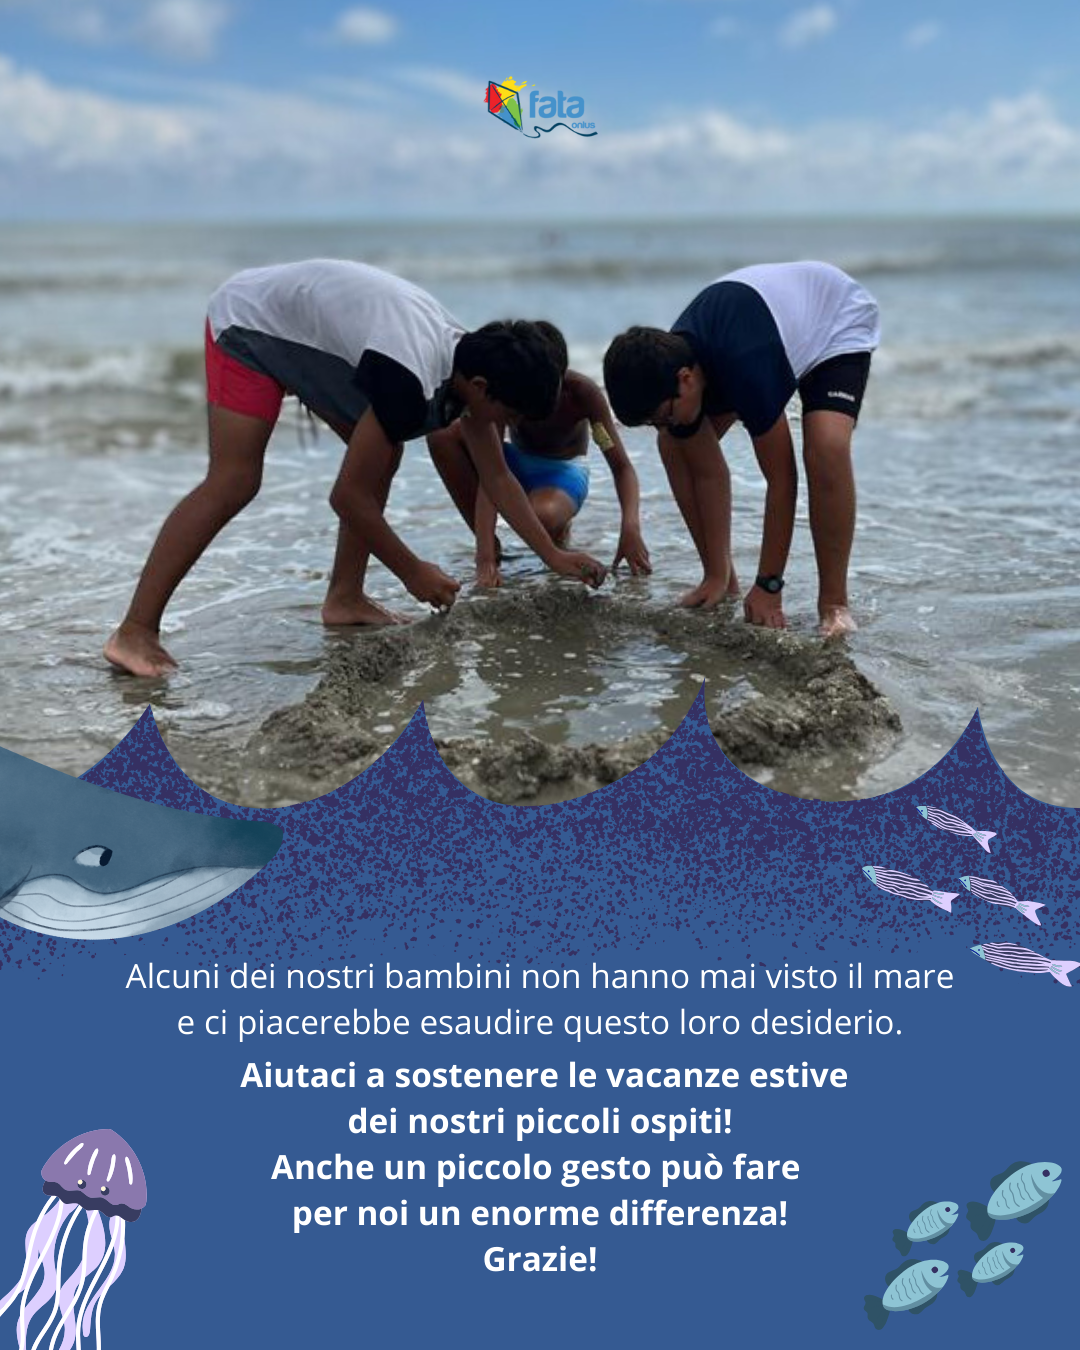 Featured image for “Porta i nostri bambini al mare!”